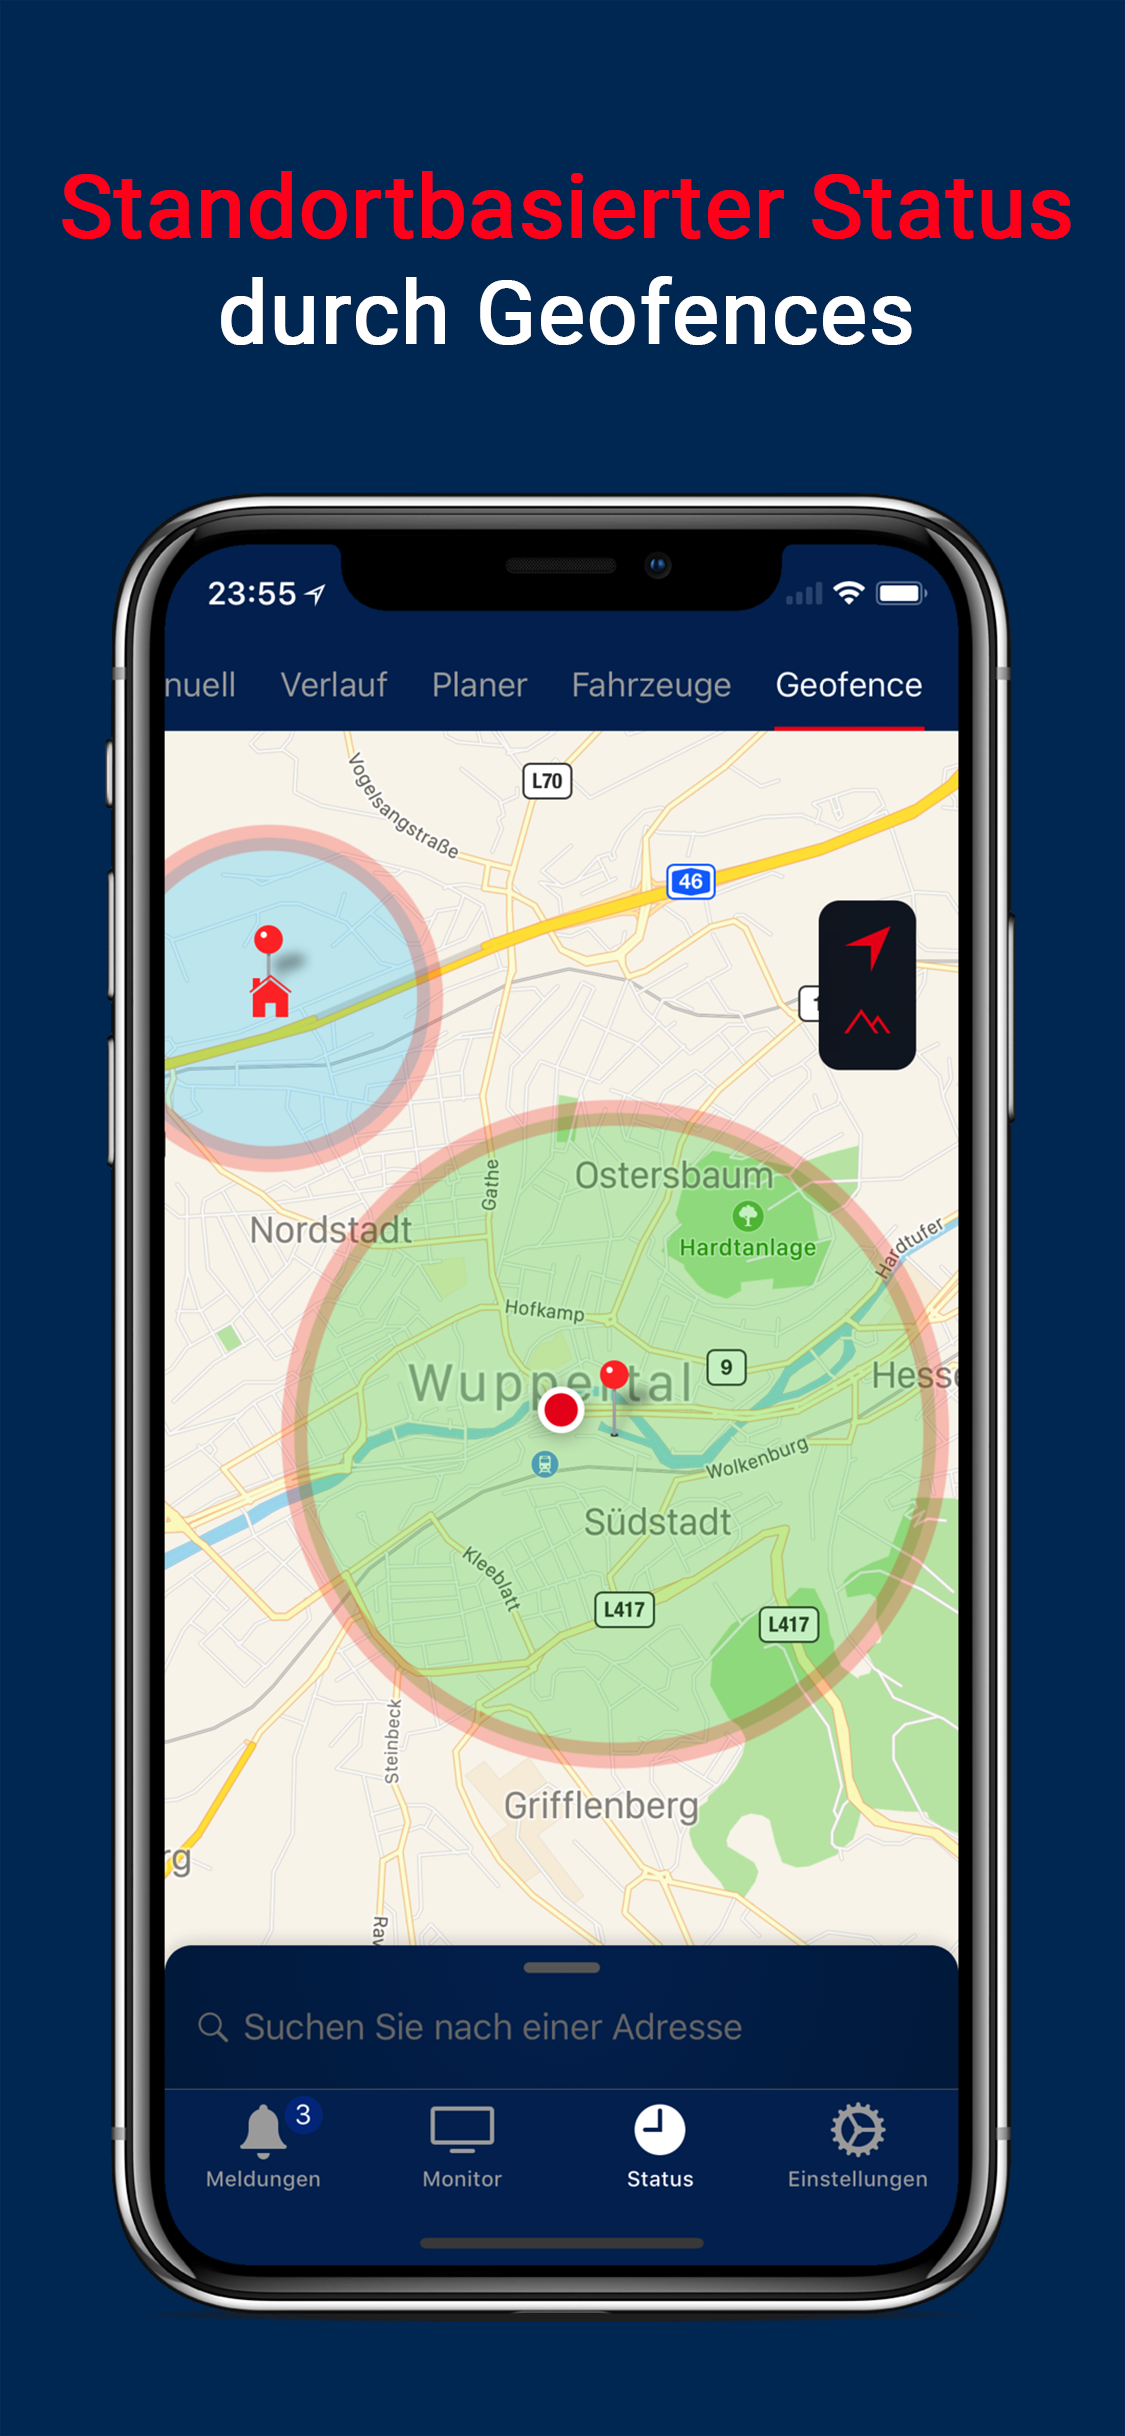 Die GPS-/Geofence-Funktion der Alarmapp erkennt den Einsatzbereitschaft von Rettern und setzt den Status automatisch